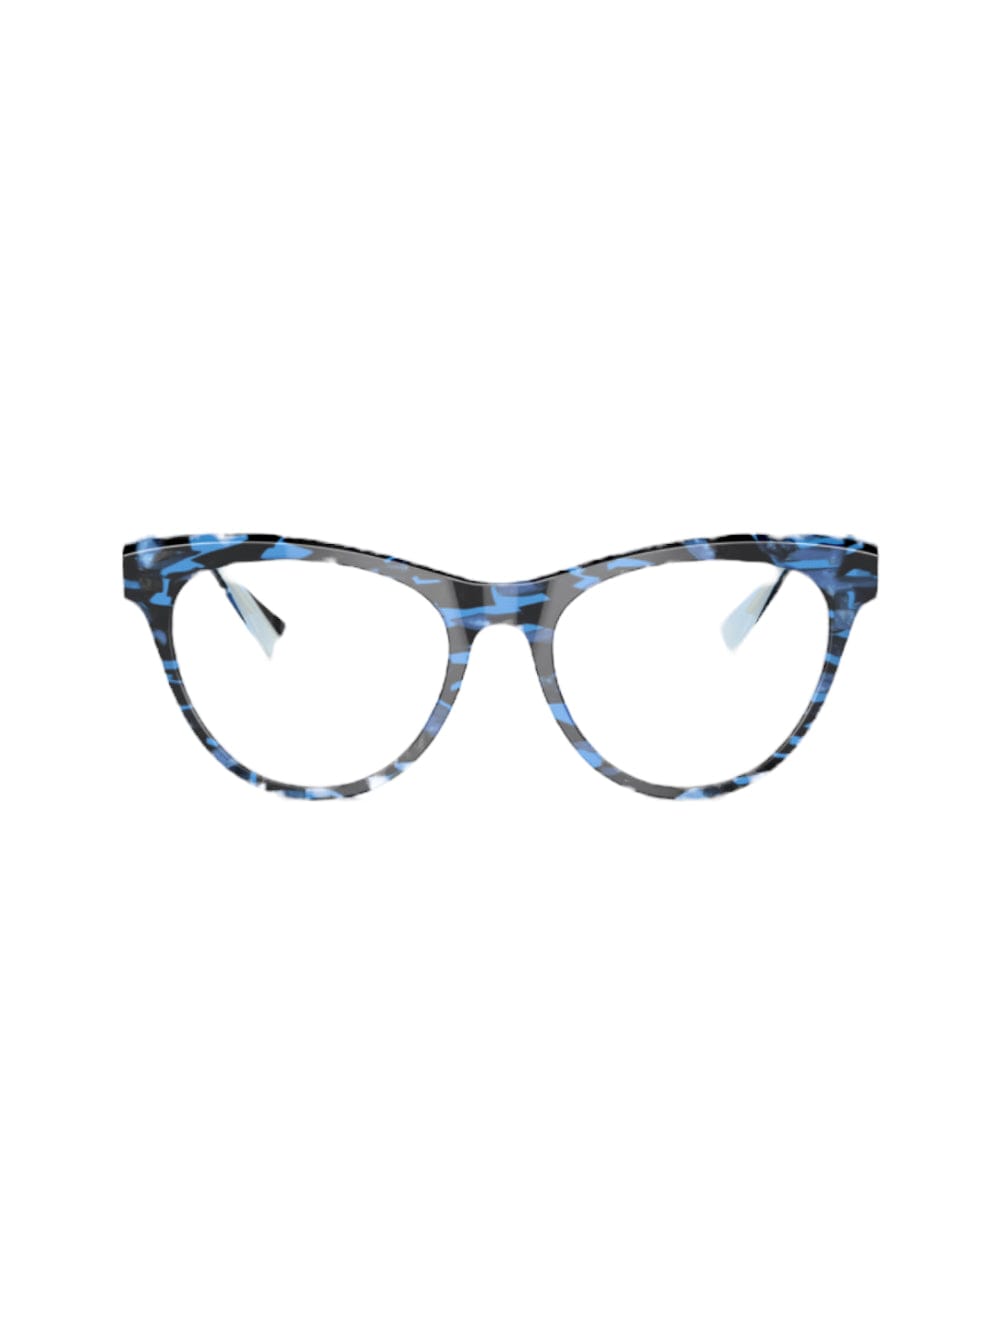 Alain Mikli Anastia - 3140 - Blue/black Glasses